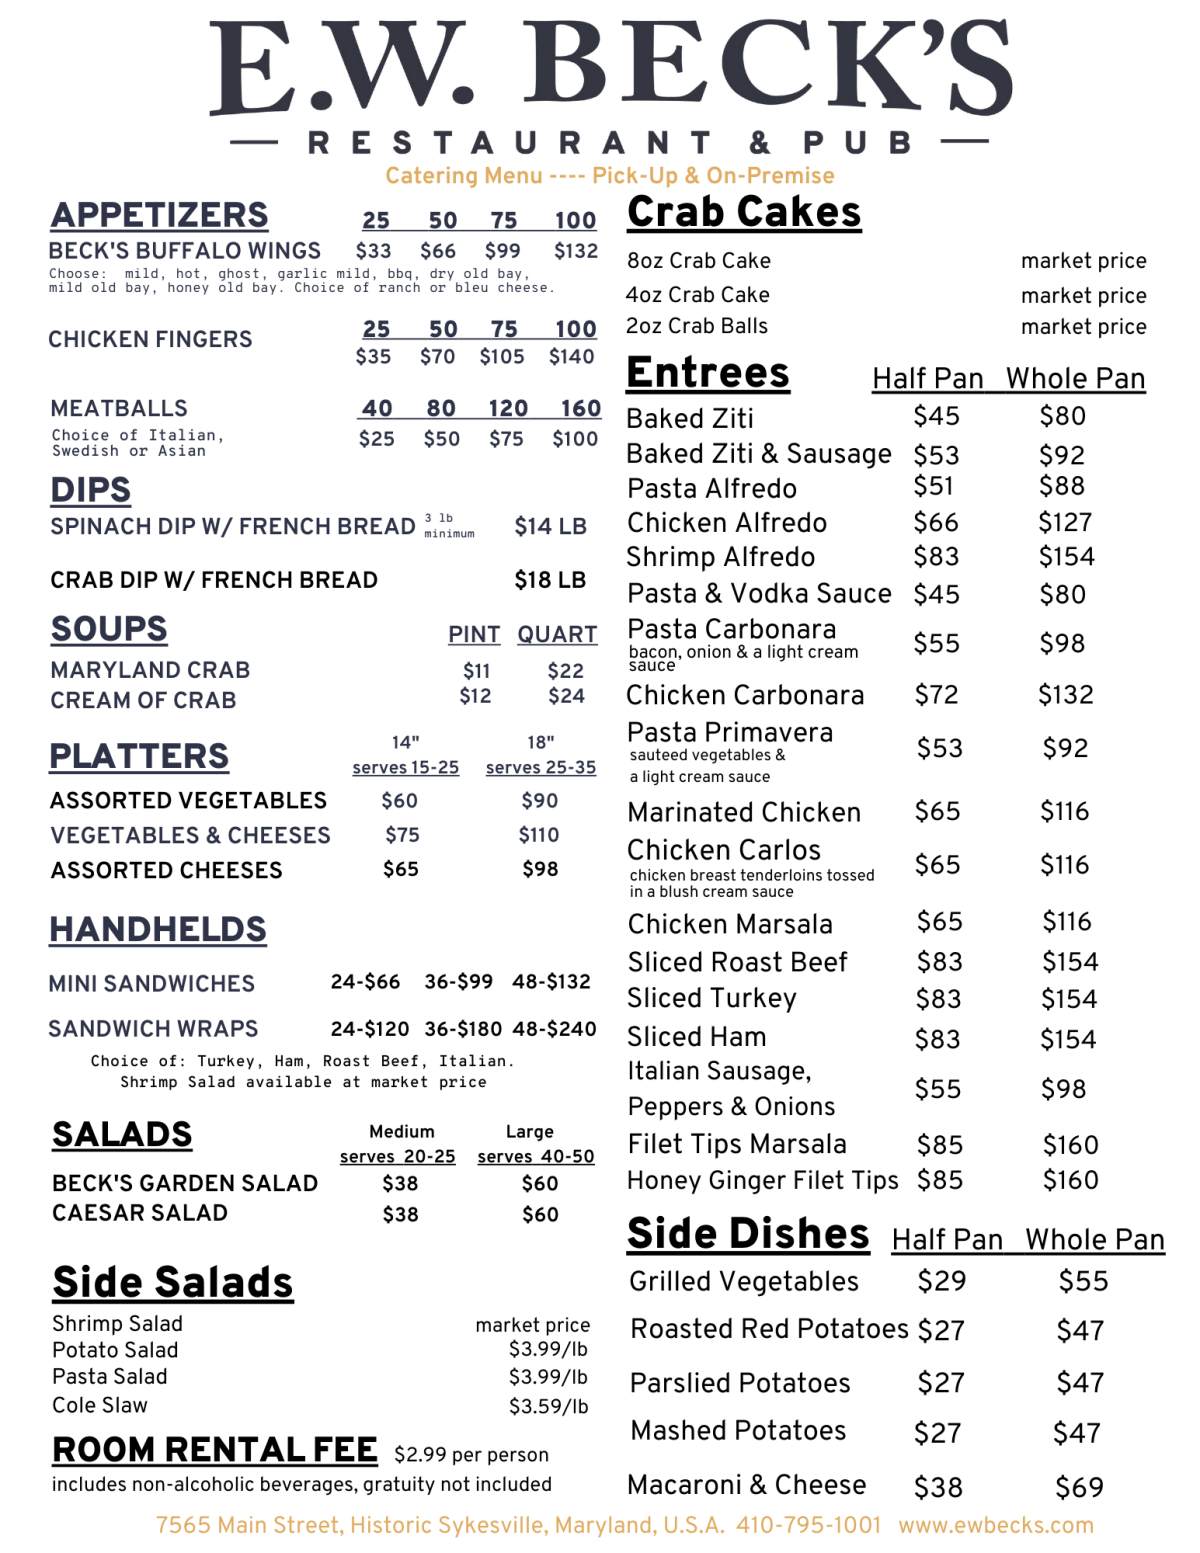 E. W. Becks catering menu